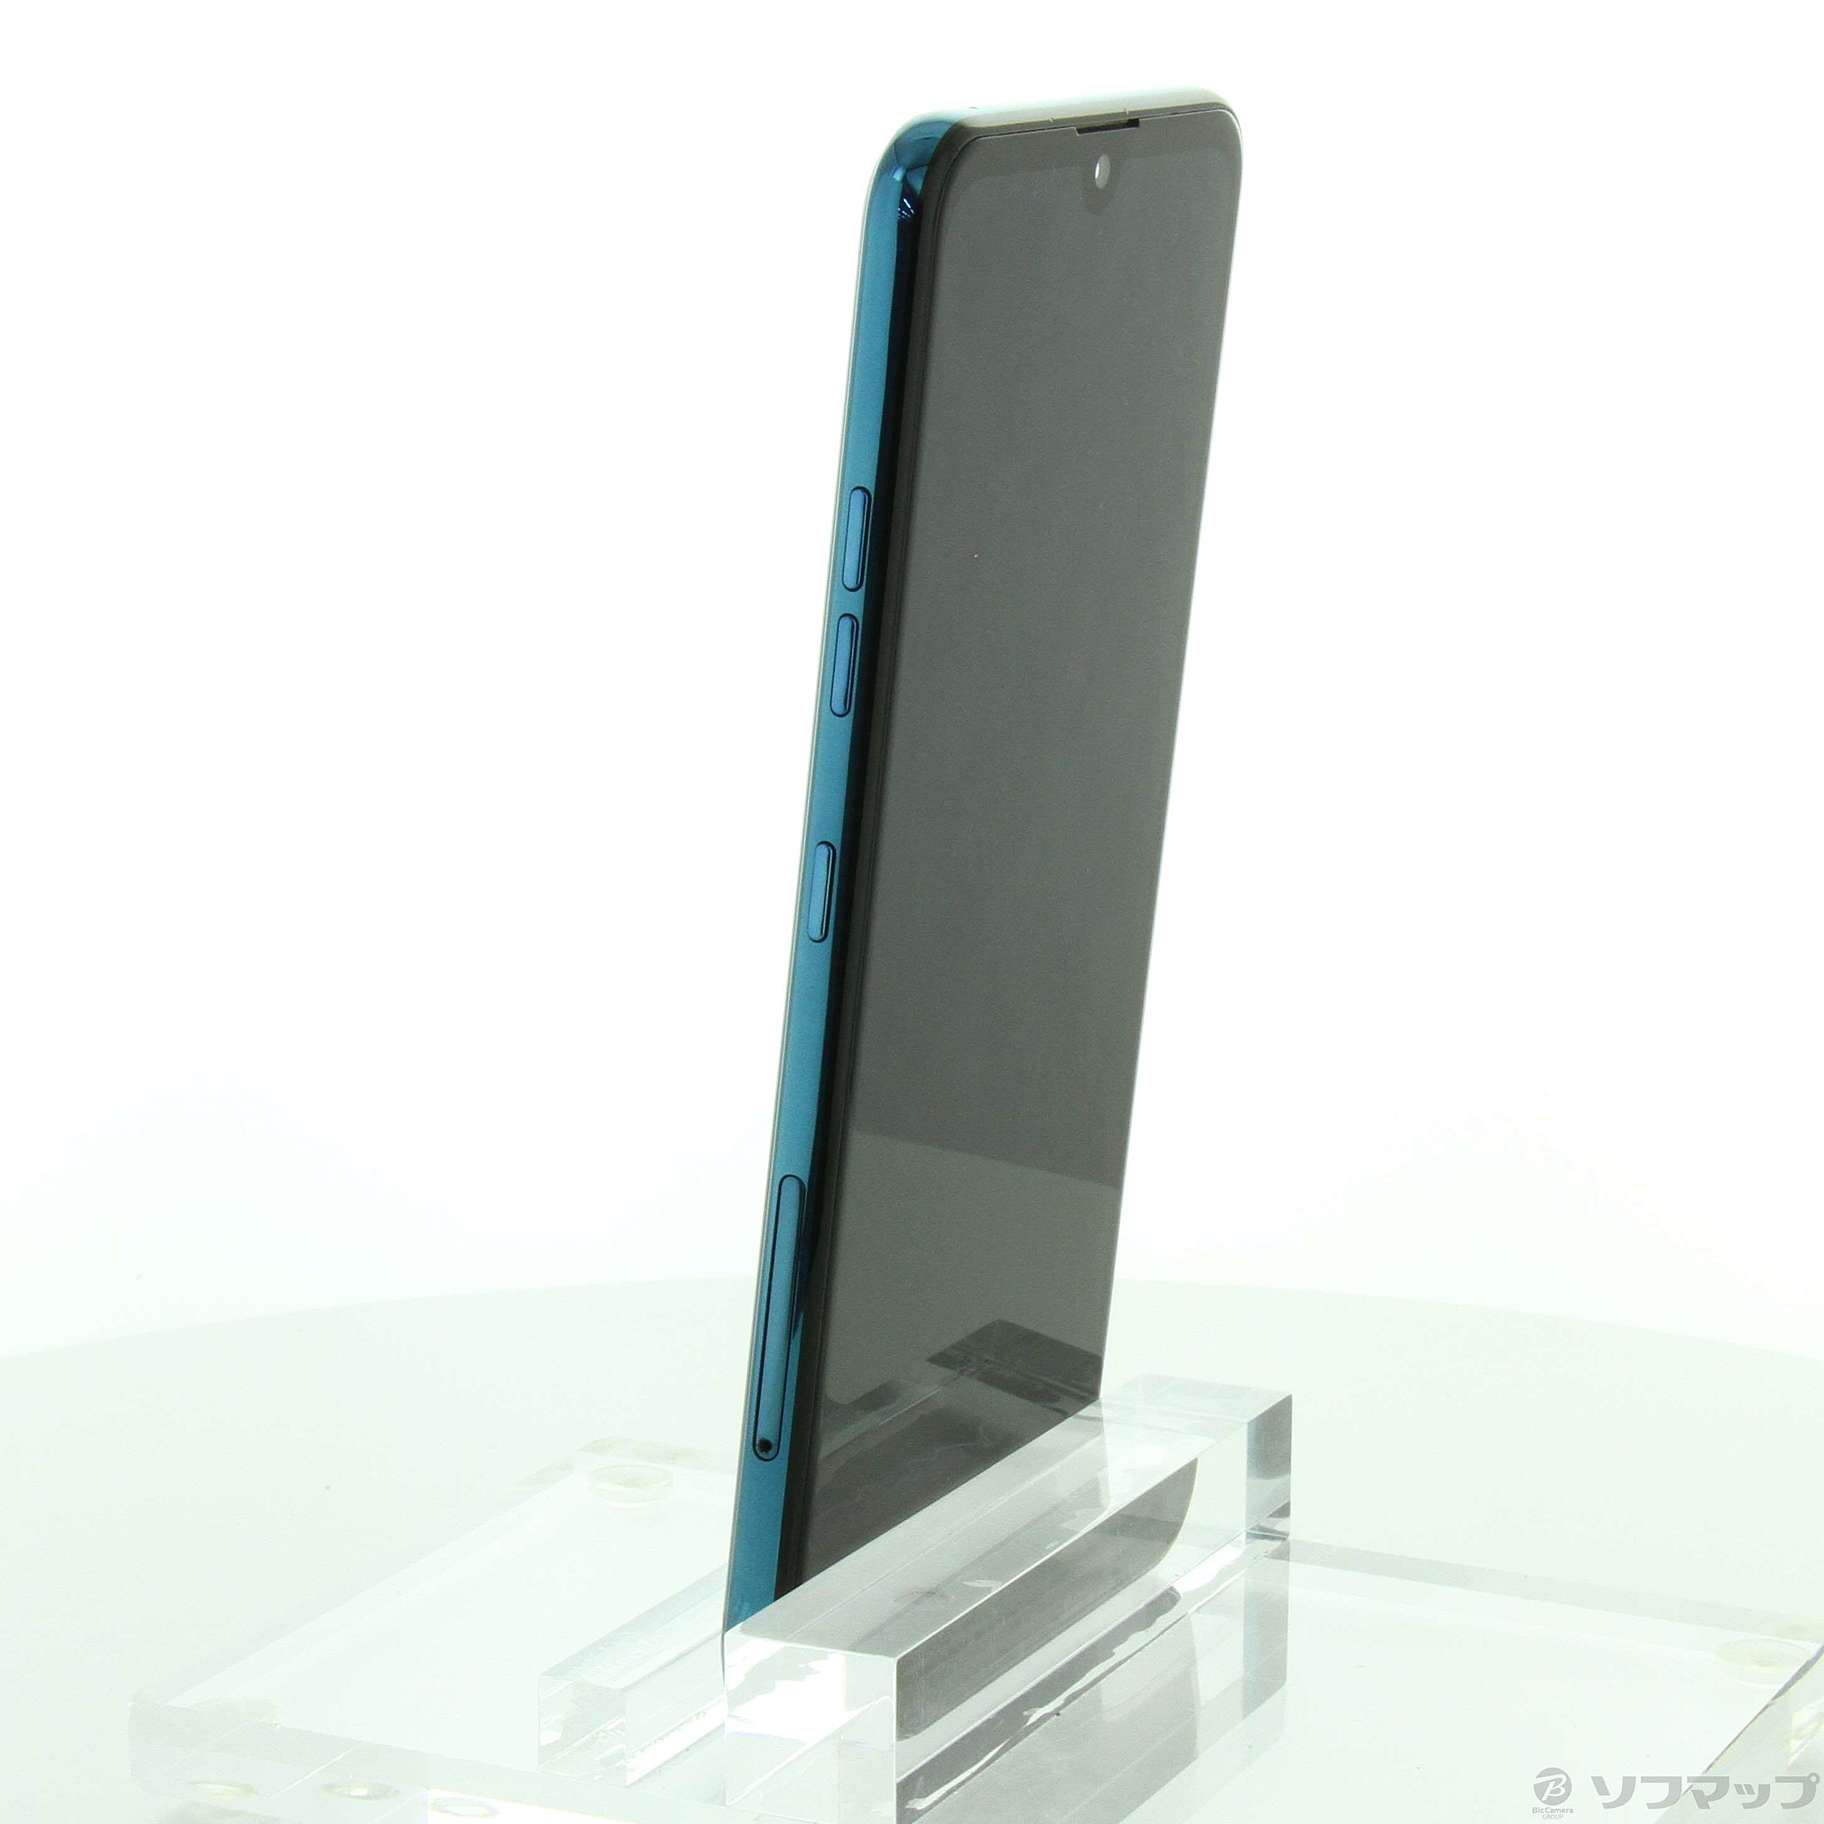 LG K50 32GB スペースブルー SBLGK50 SoftBank